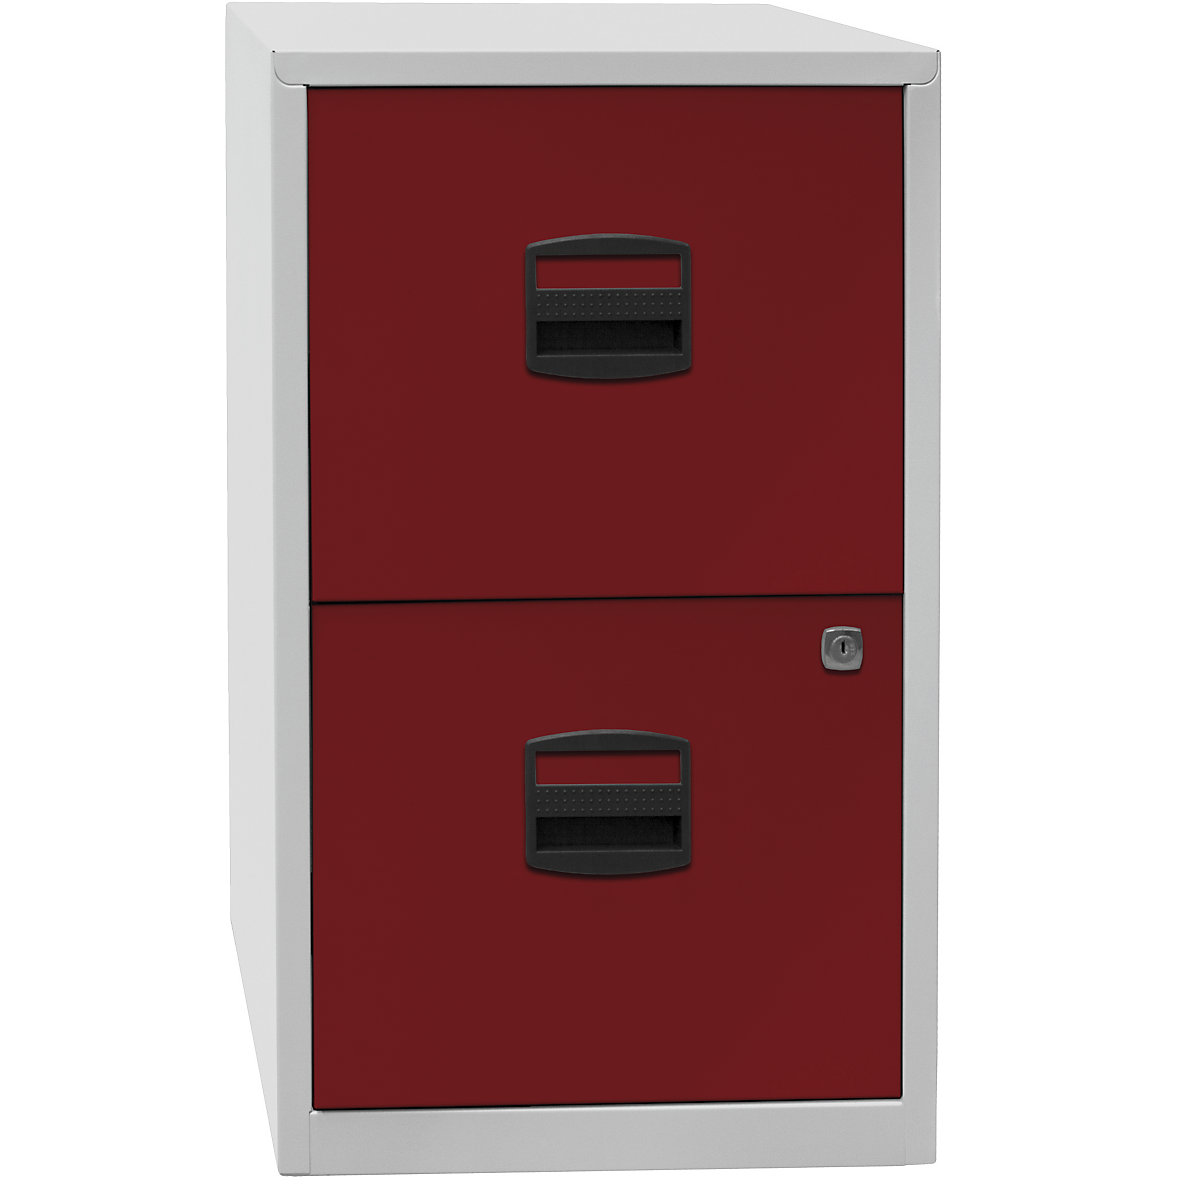 Classificatore per cartelle sospese PFA – BISLEY, 2 cassetti, grigio chiaro / rosso cardinale-1